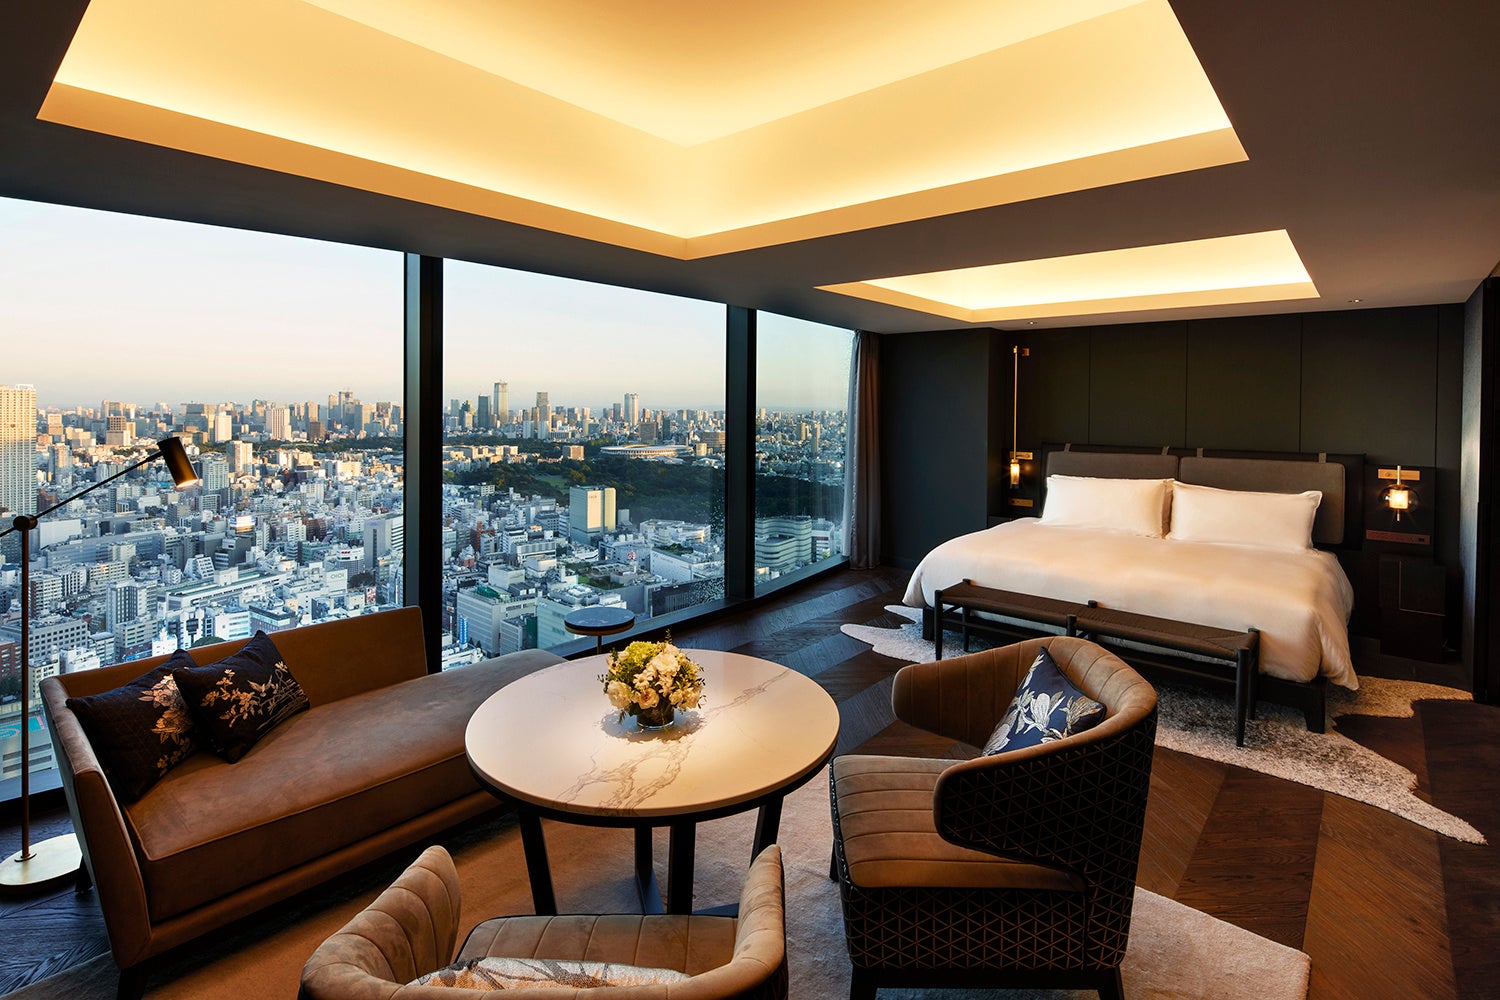 世界有数の繁華街、新宿・歌舞伎町に誕生する新しい2つのホテルBELLUSTAR TOKYO、HOTEL GROOVE SHINJUKU開業日決定